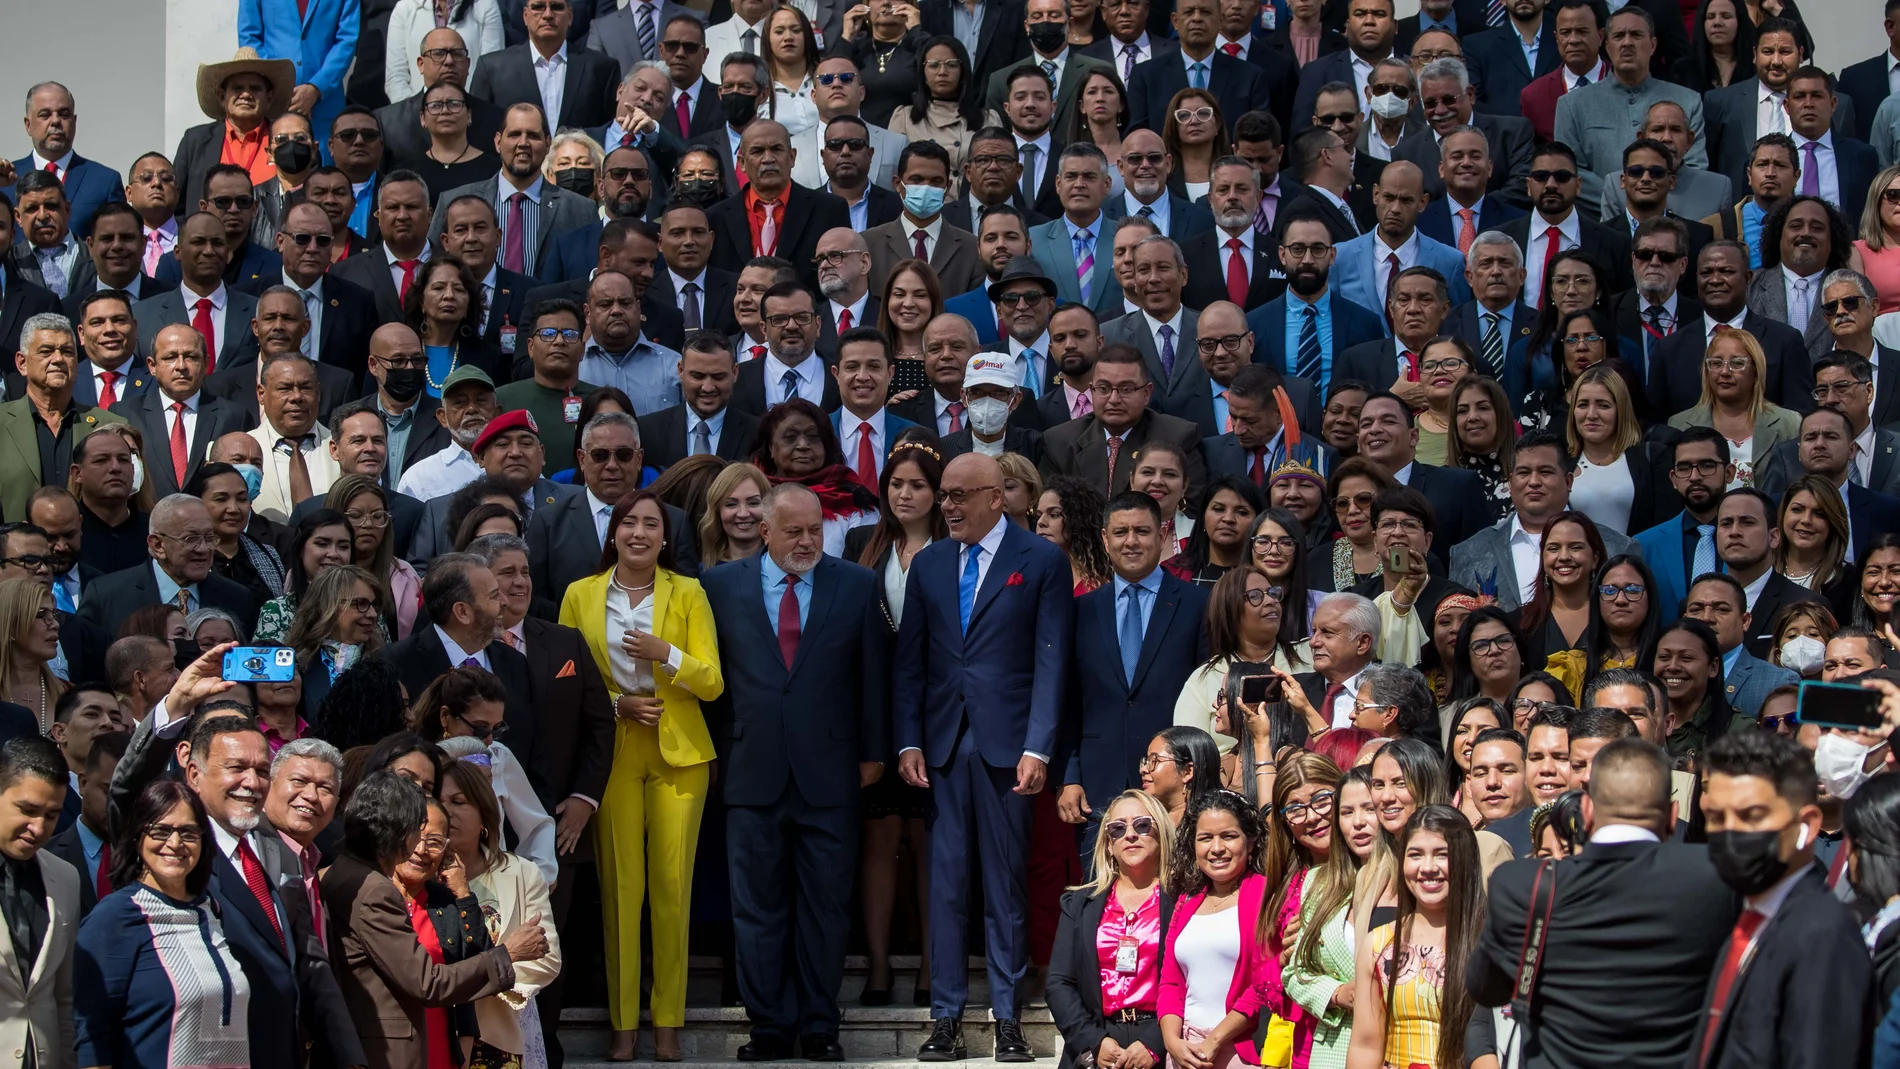 América Pérez (amarillo), segunda vicepresidenta de la Asamblea; el diputado Diosdado Cabello (c-i); el presidente de la Asamblea, Jorge Rodríguez (c), y el primer vicepresidente de la Asamblea, Pedro Infante (c-d), entre otros, participan en la inauguración del Parlamento controlado por Maduro